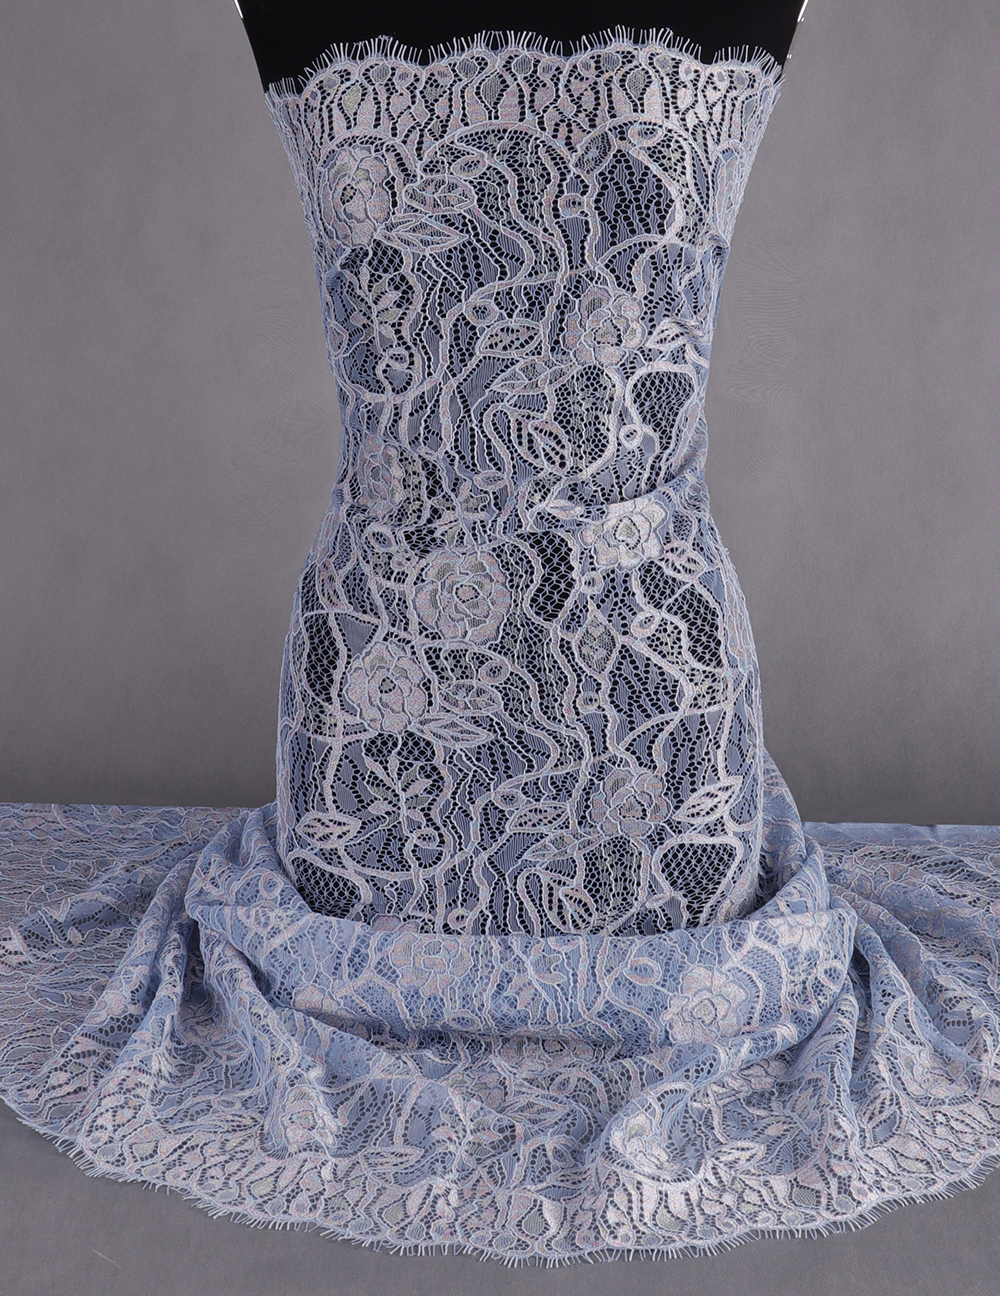 Lizhiying painted peony, a beautiful lace fabric